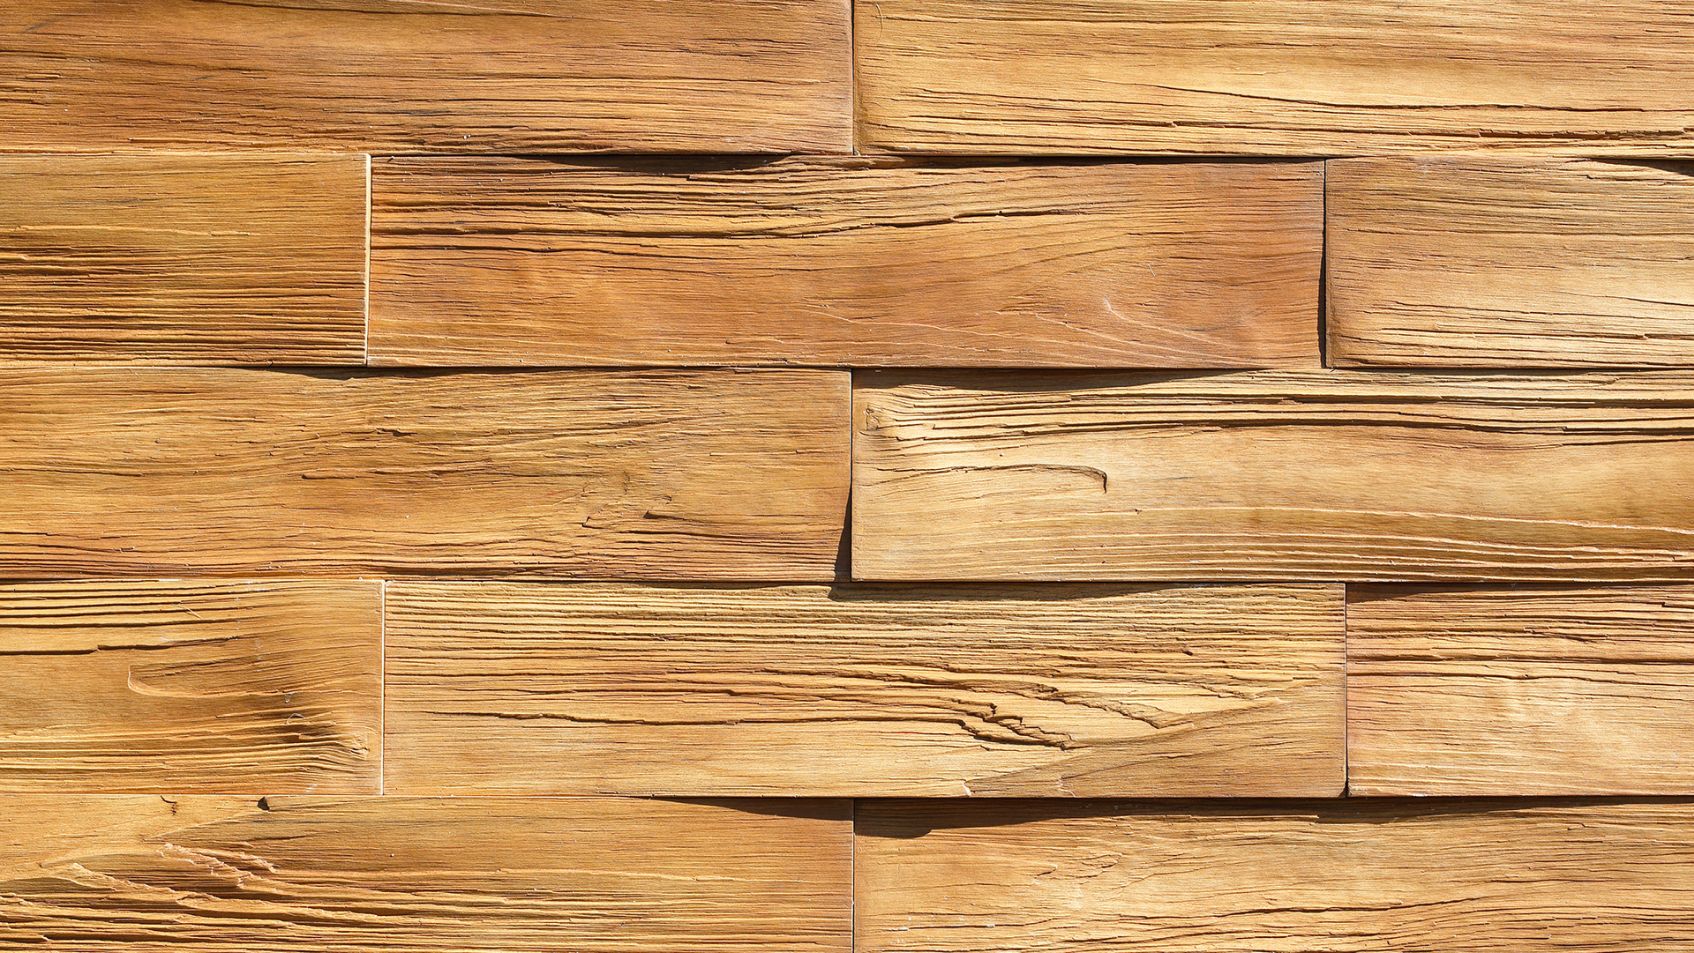 Stegu Timber, czyli kamień elewacyjny inspirowany naturą